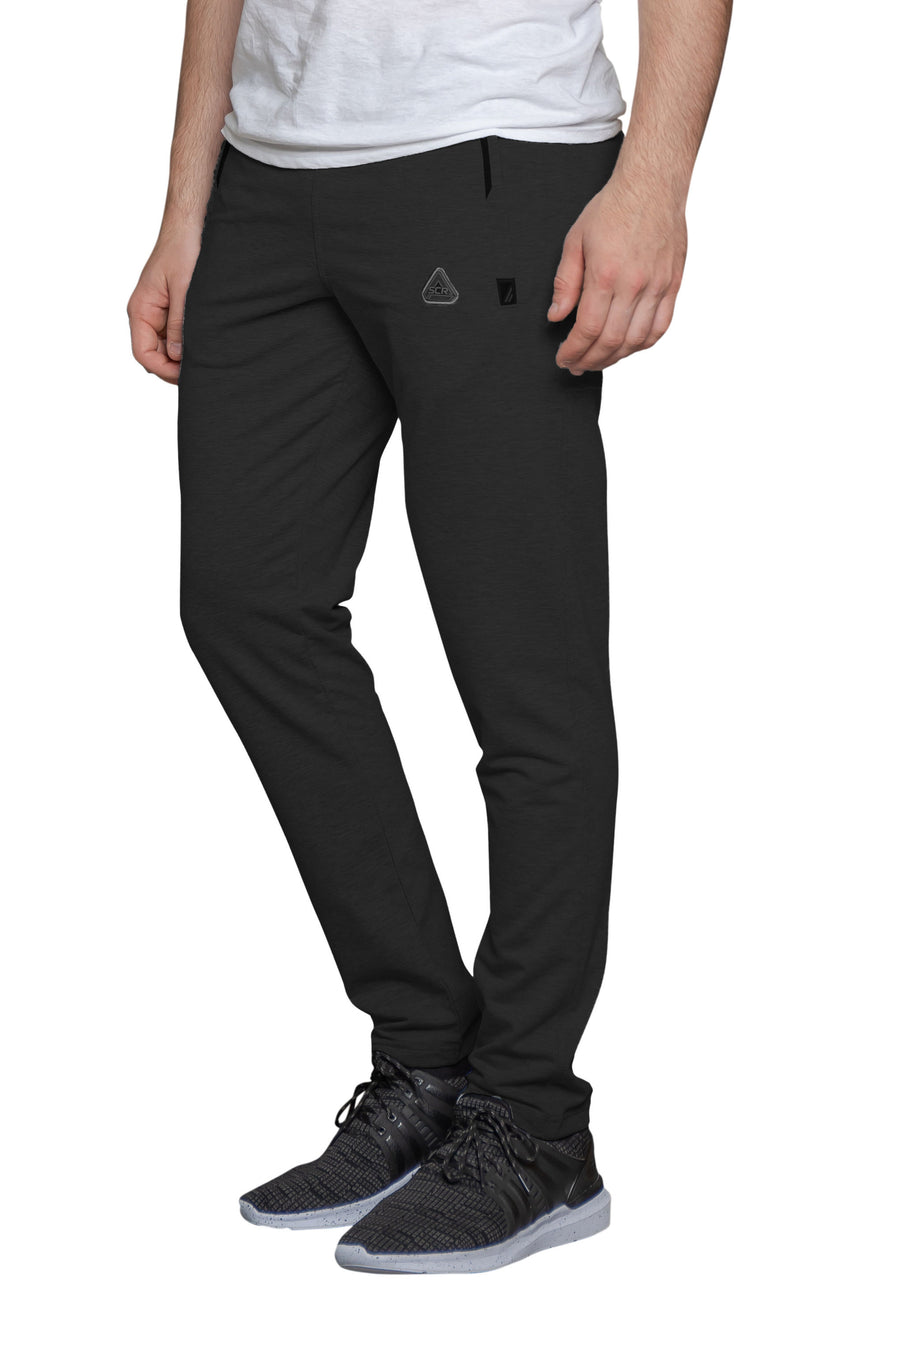 SCR sportswear mens sweatpants-Tapered [536,SLIM TALL, 6'2"-6'11"]